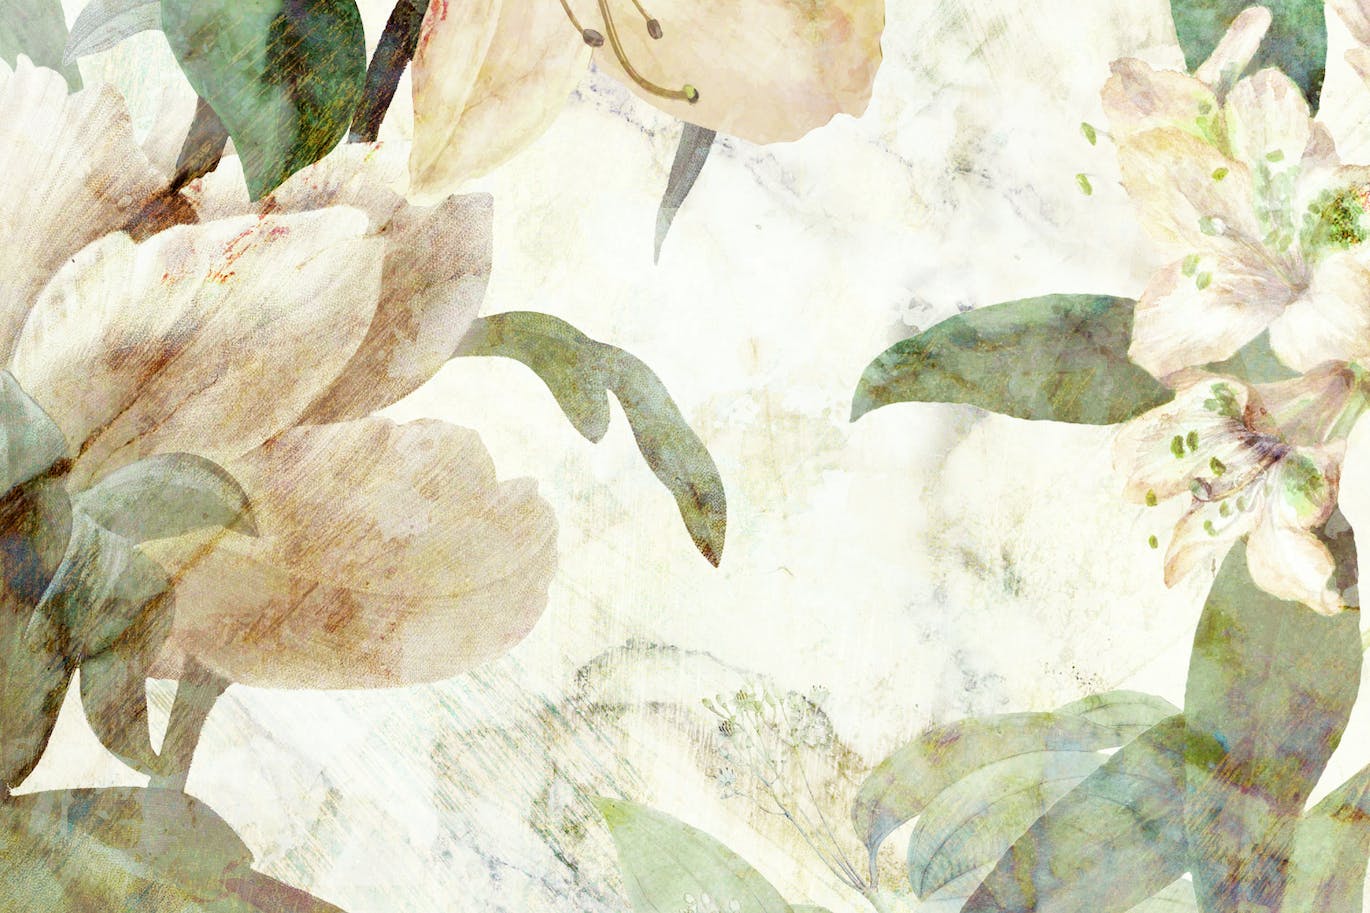 古老壁画花卉图案素材 Old Fresco Flowers 图片素材 第4张